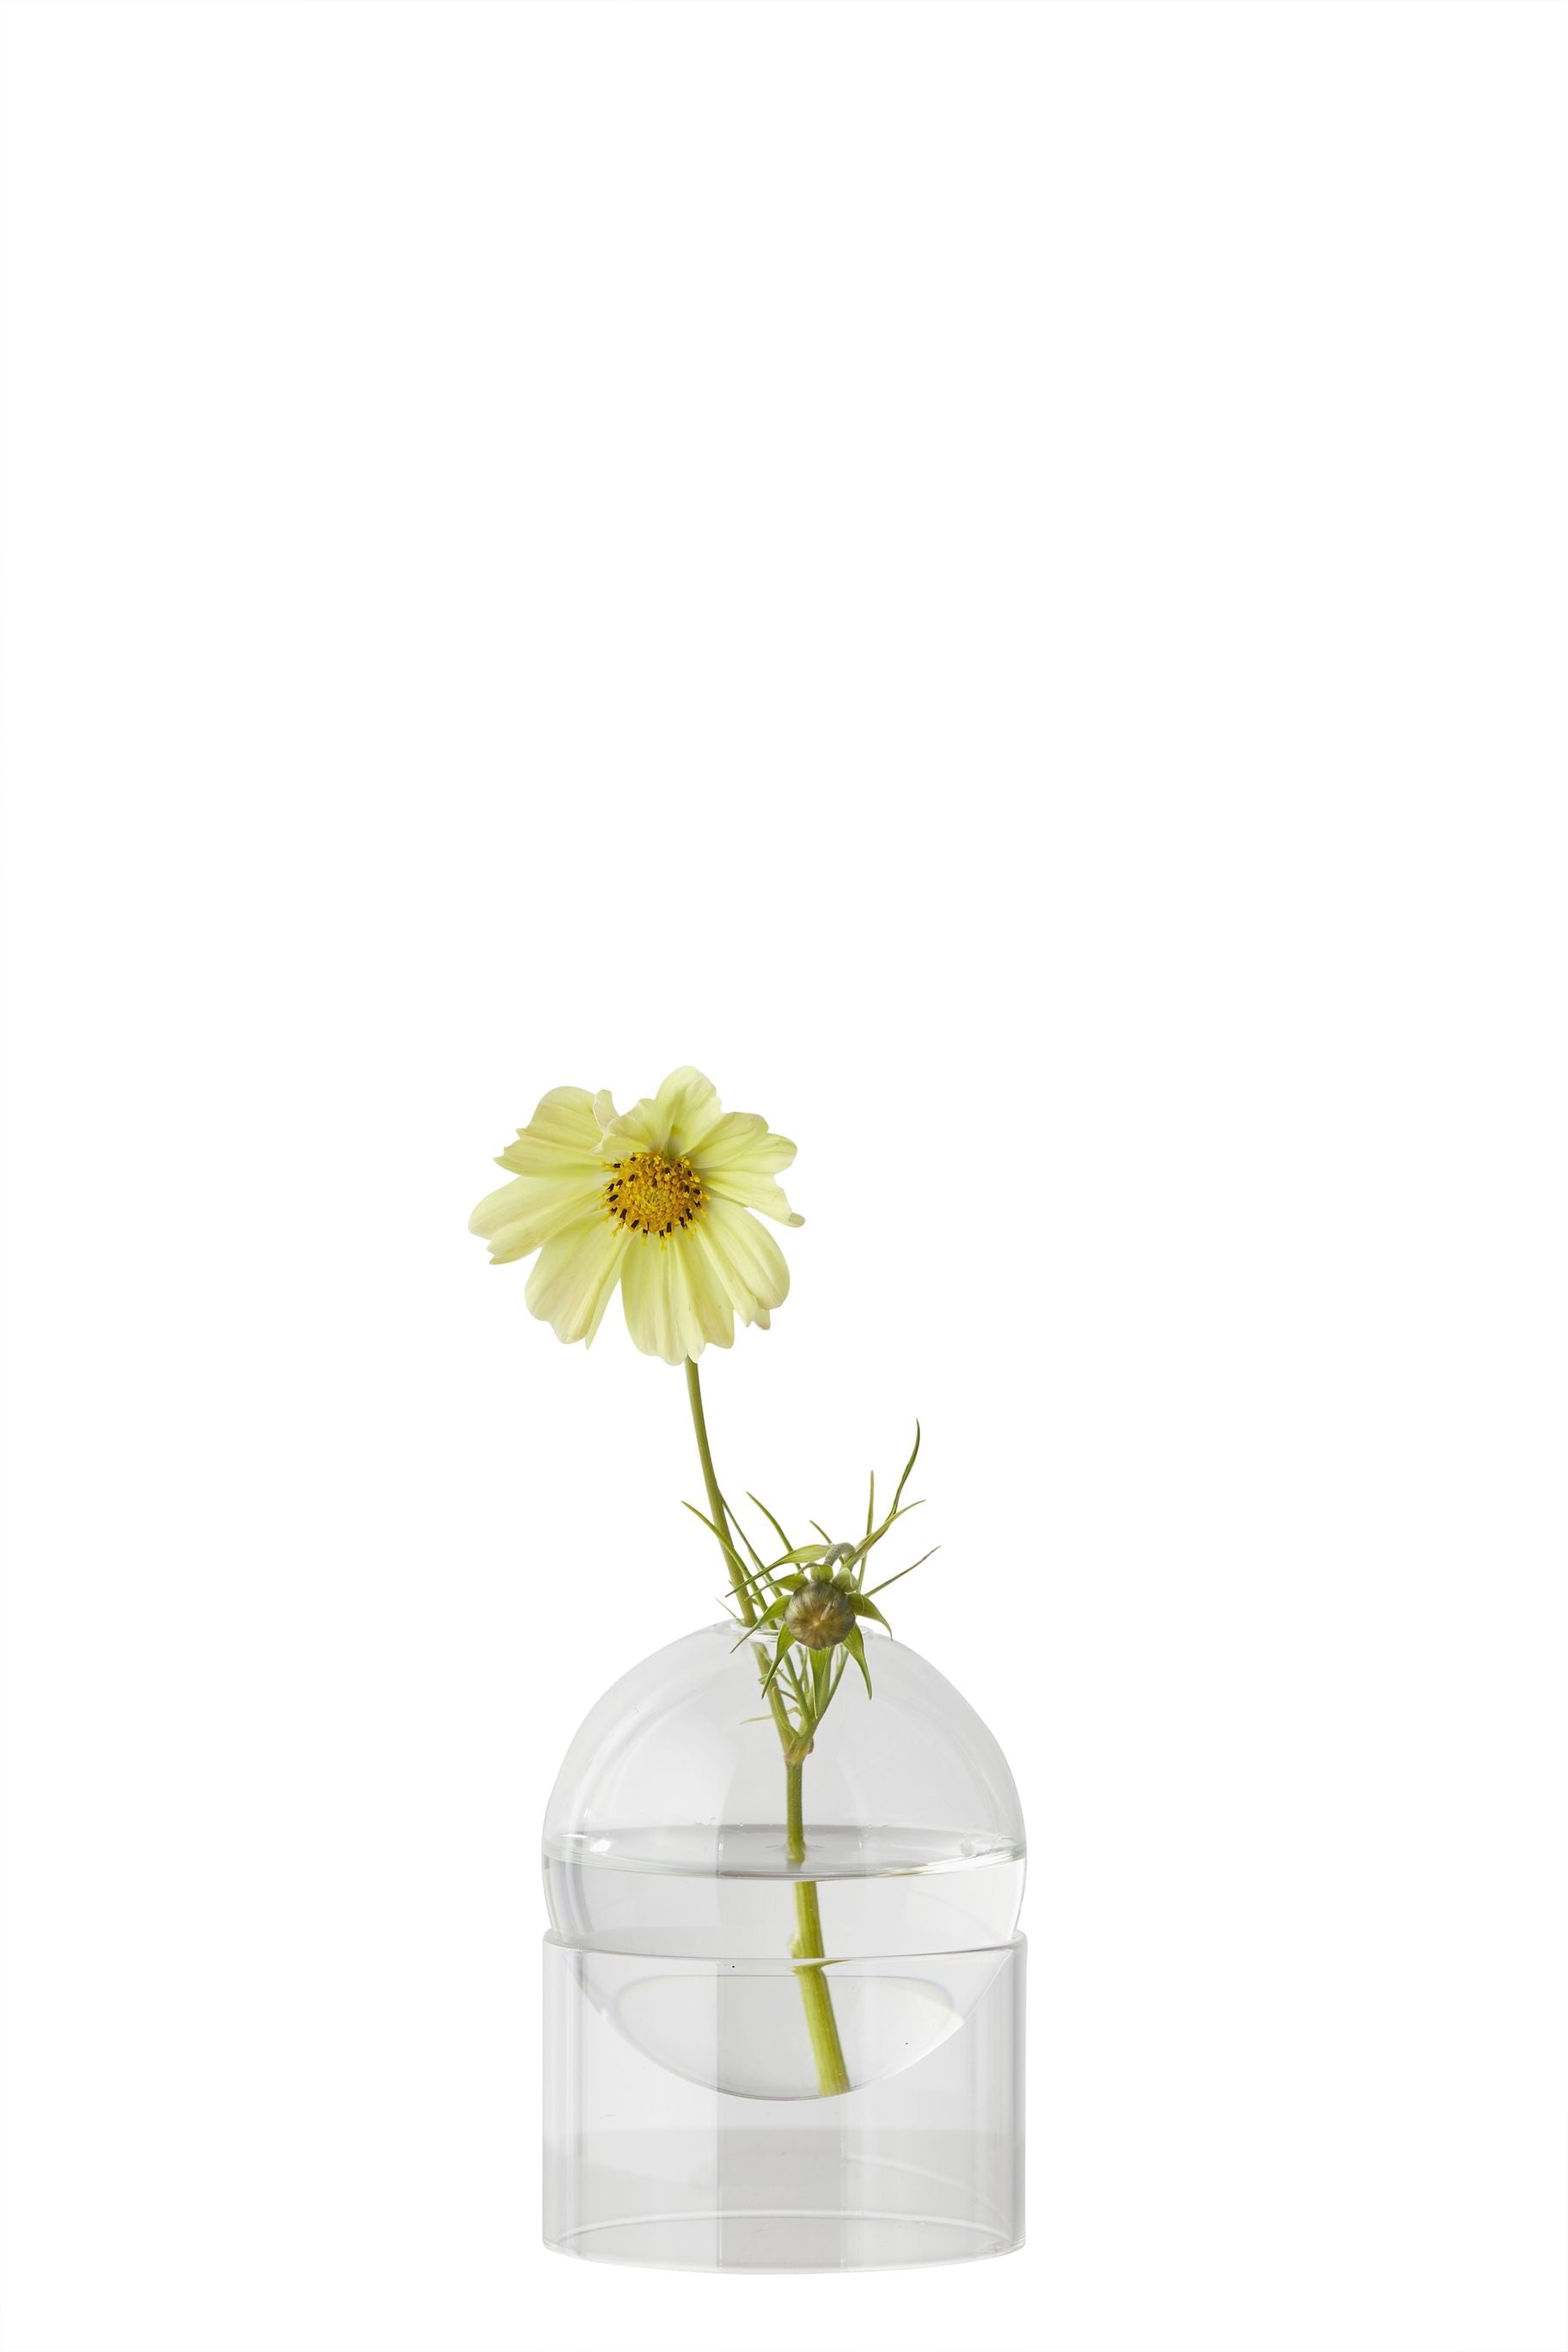 Studio sur le vase de bulles de fleur debout 10 cm, transparent